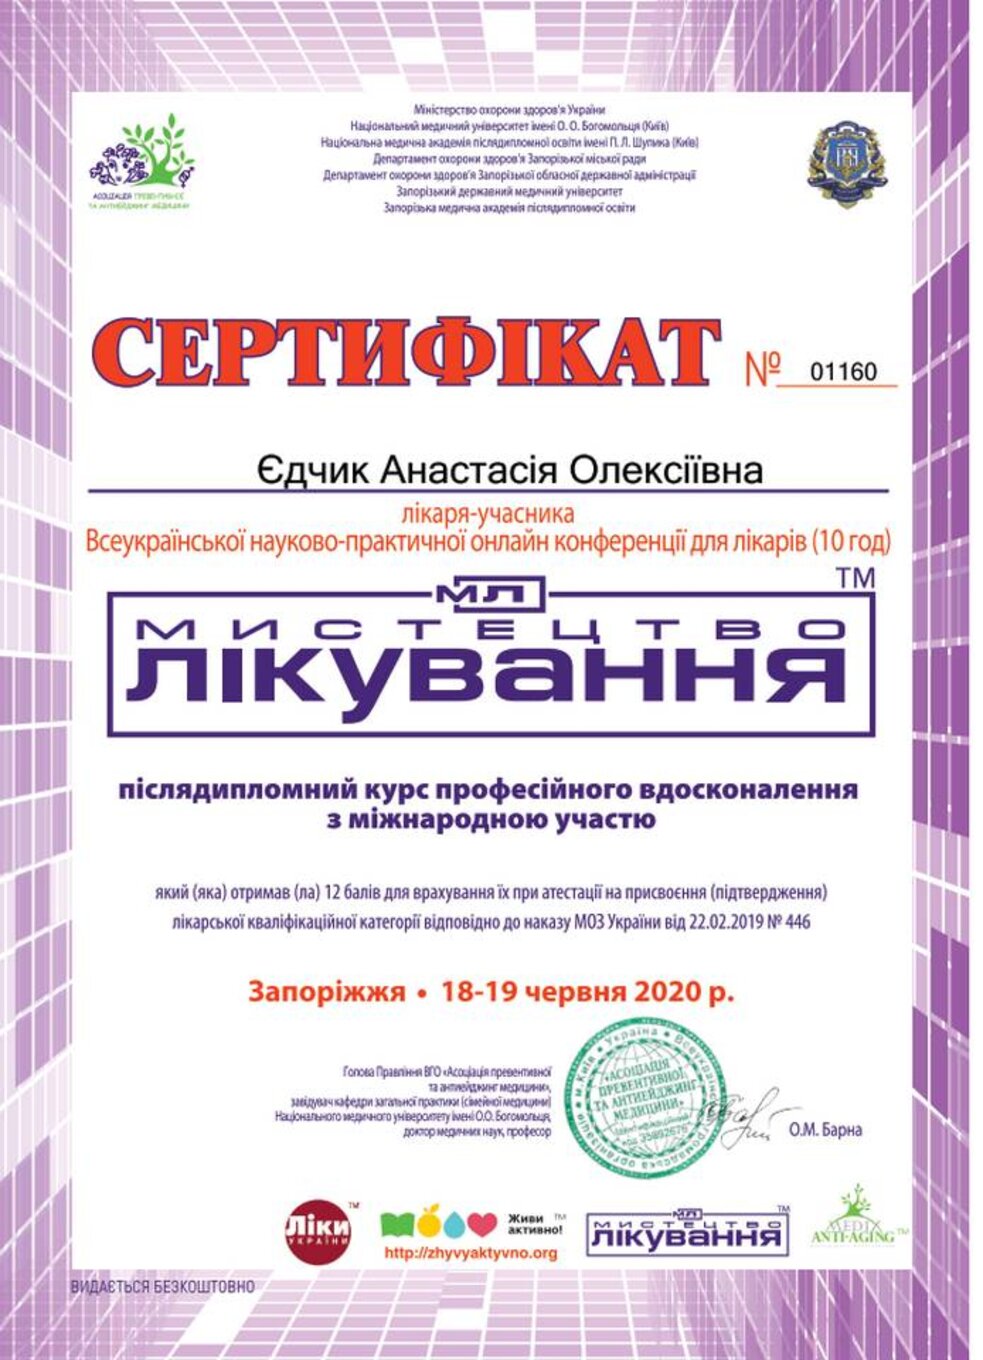 certificates/yedchik-anastasiya-oleksiyivna/erc-edchik-cert-95.jpg